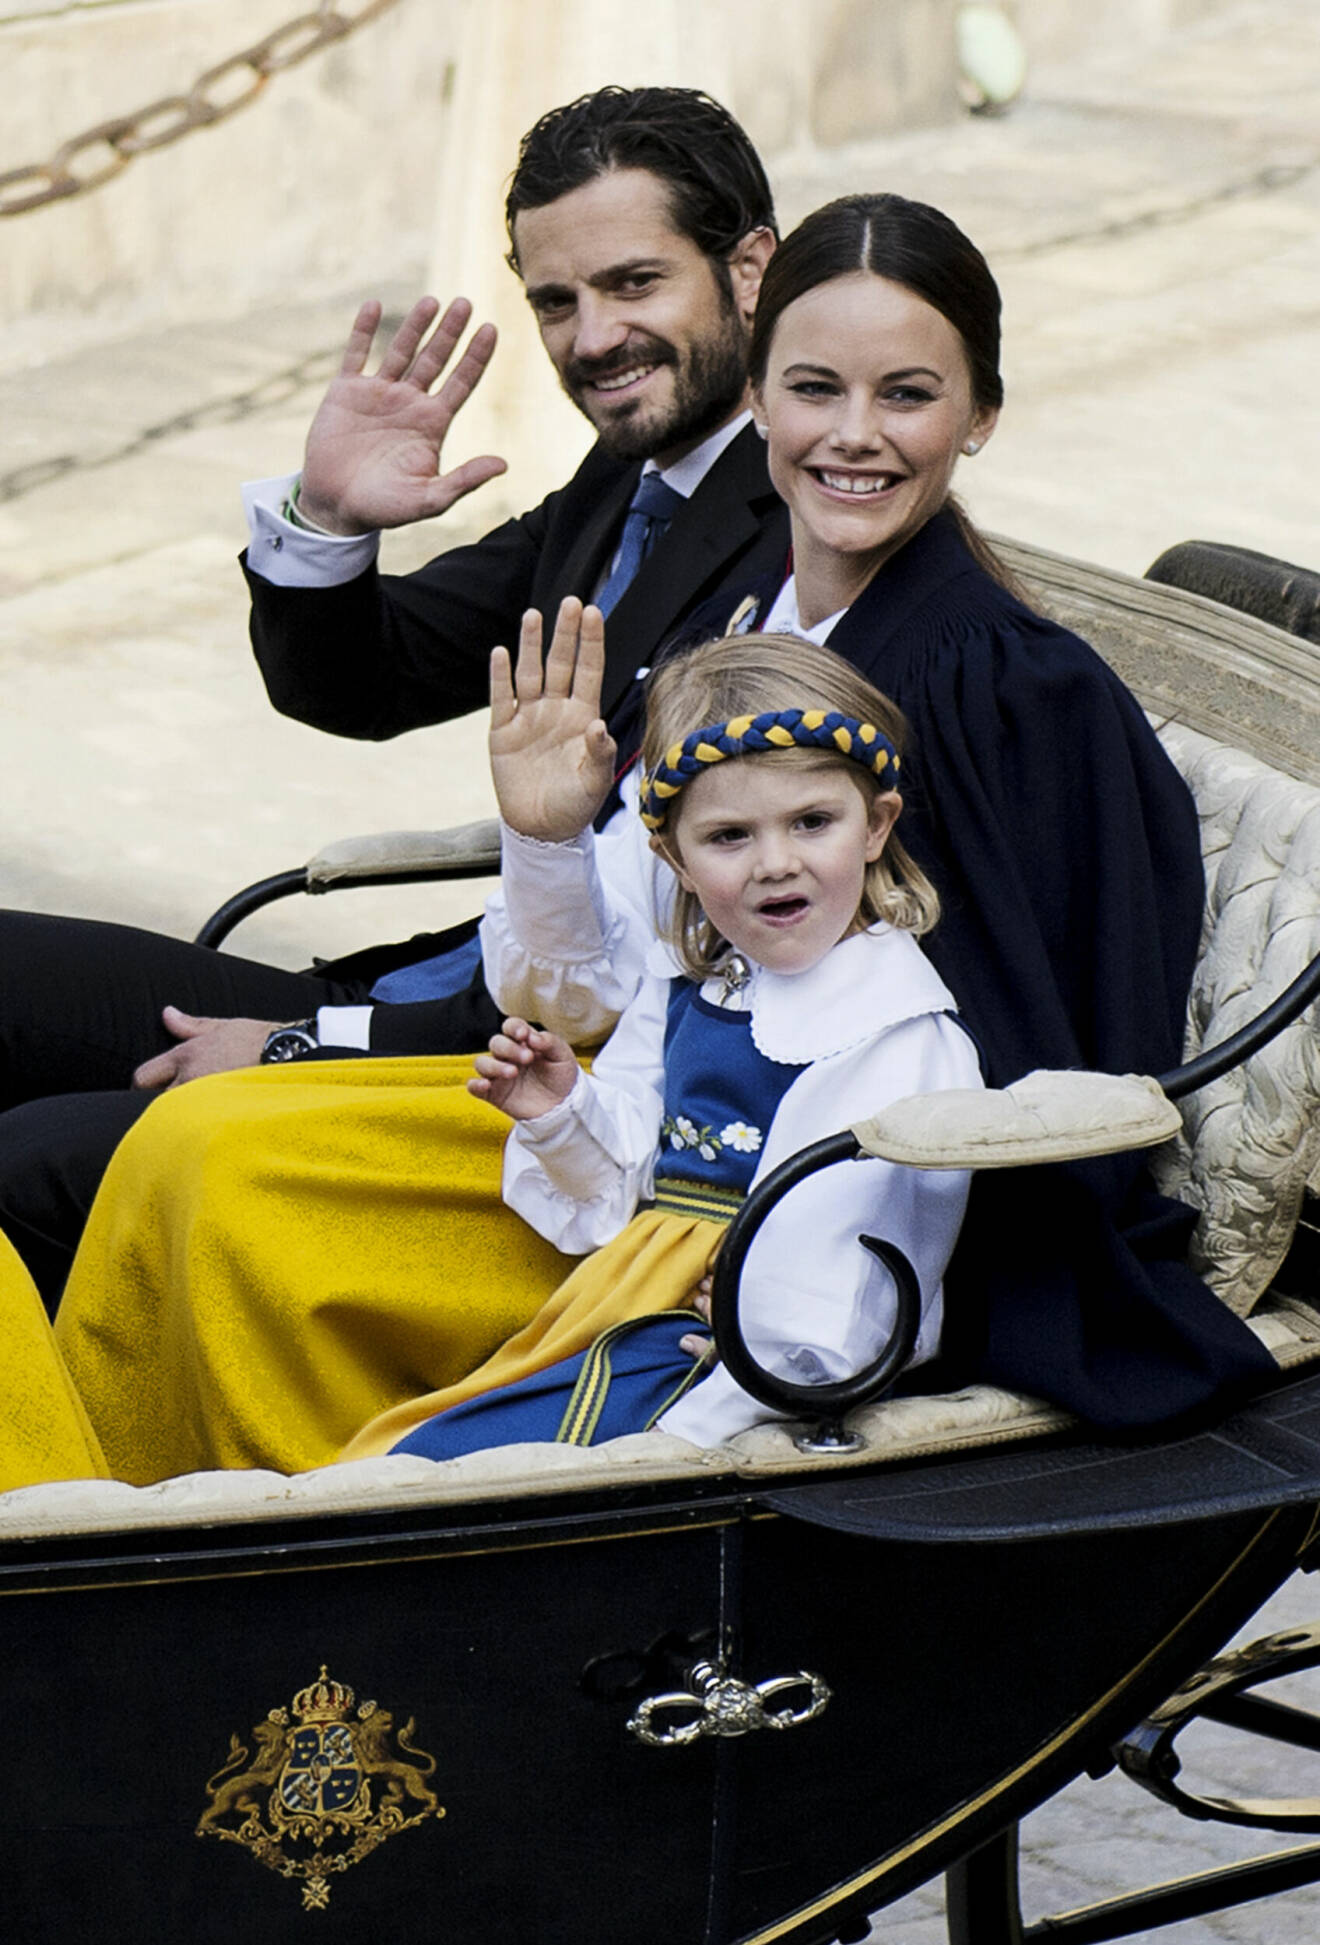 Prins Carl Philip och prinsessan Sofia åker vagn på nationaldagsfirandet med prinsessan Estelle som barn bredvid sig